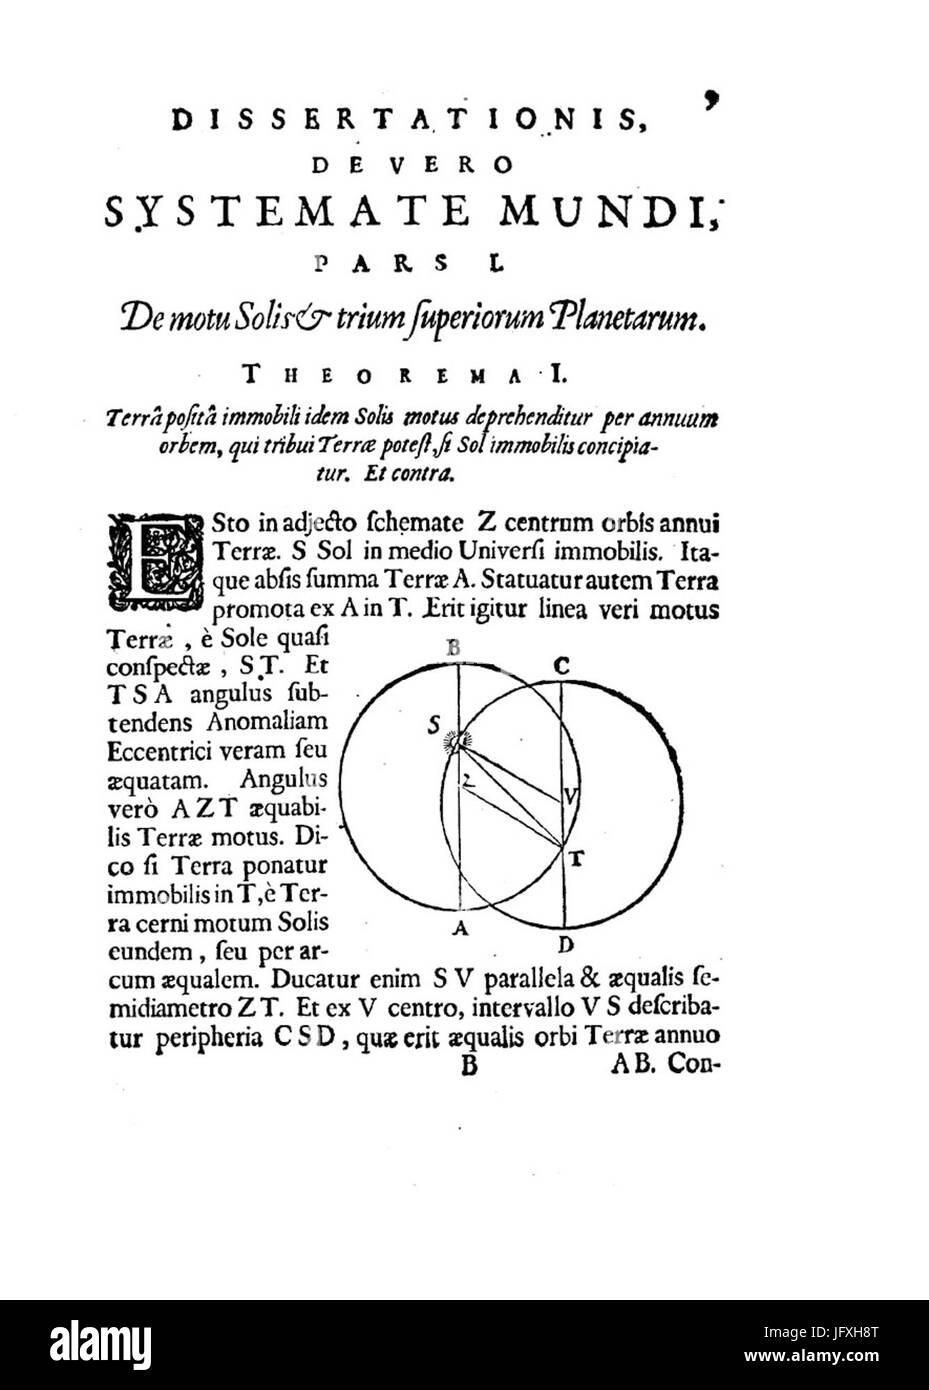 Deusing - De vero systemate mundi dissertatio mathematica, 1643 - 178360 Stock Photo